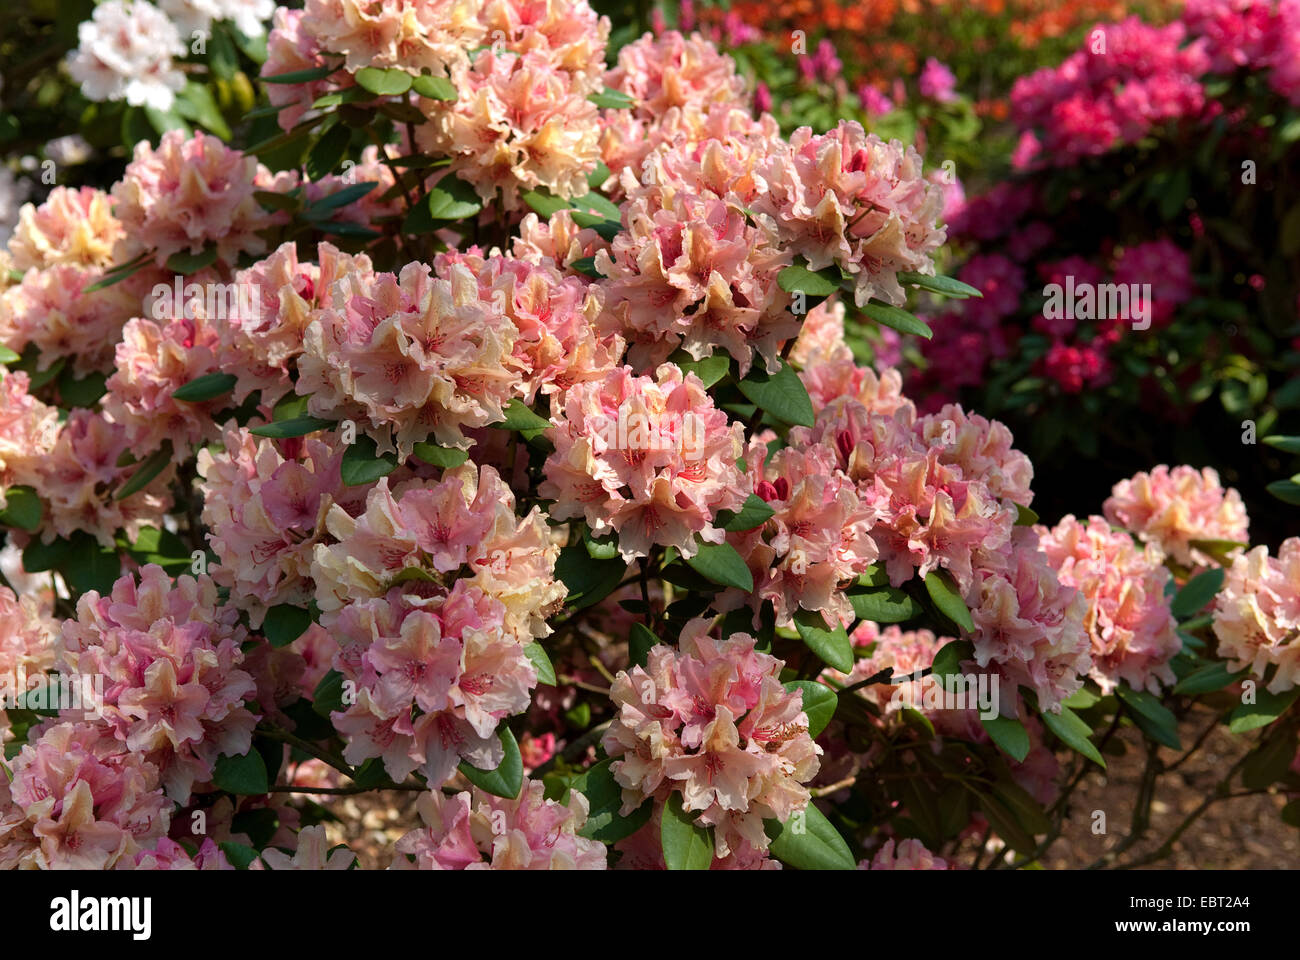 rhododendron (Rhododendron 'Brasilia', Rhododendron Brasilia), cultivar Brasilia Stock Photo